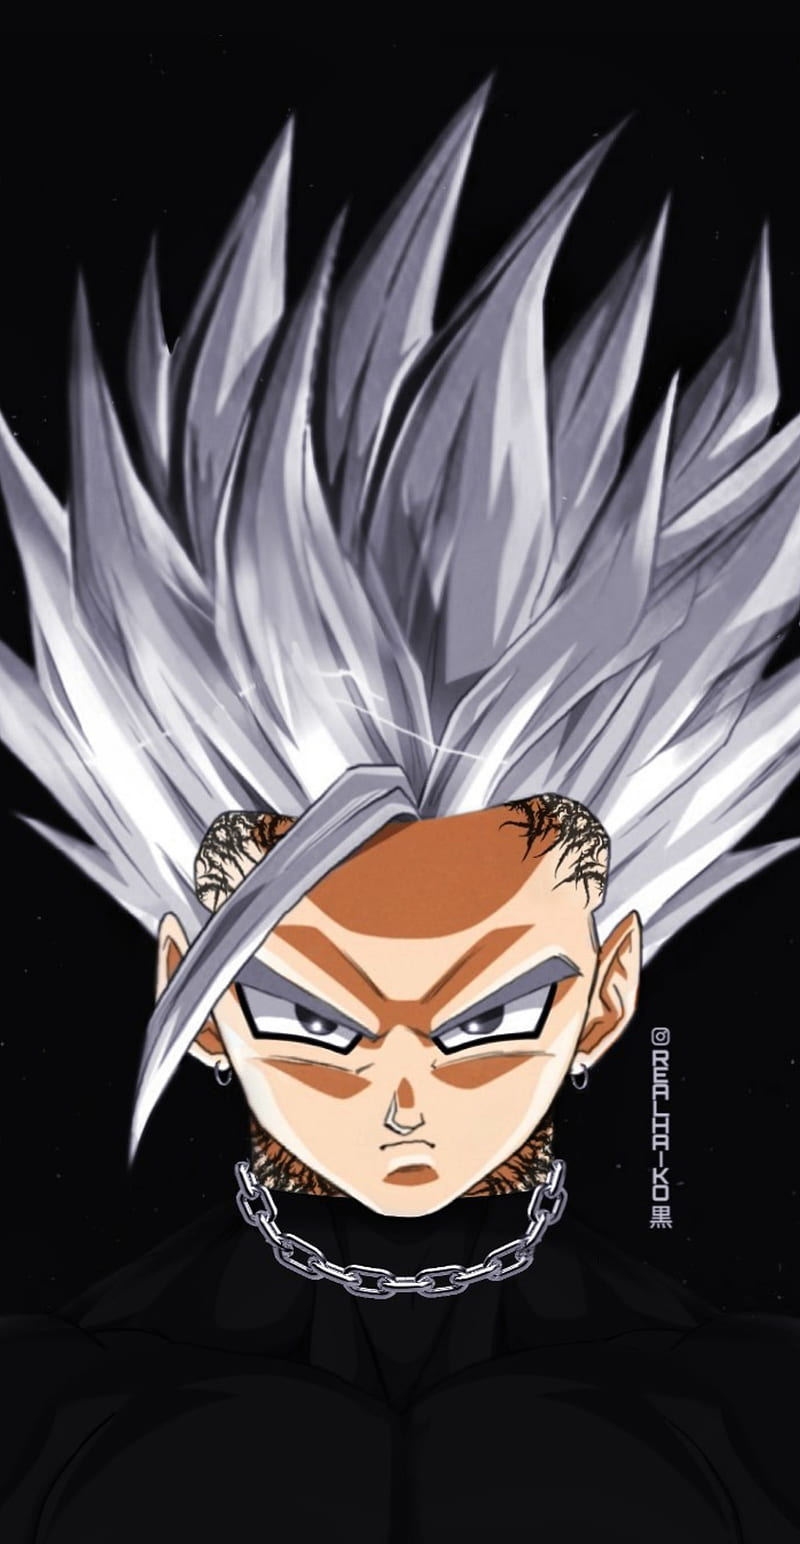 Son Gohan - Là con trai cả của Goku, người khiến cho bạn phải nghĩ về sức mạnh và sự kiên trì chưa từng thấy trong tình huống khó khăn nhất. Xem hình ảnh của anh ta để cảm nhận sức mạnh và lòng dũng cảm mãnh liệt diệu kỳ đó.